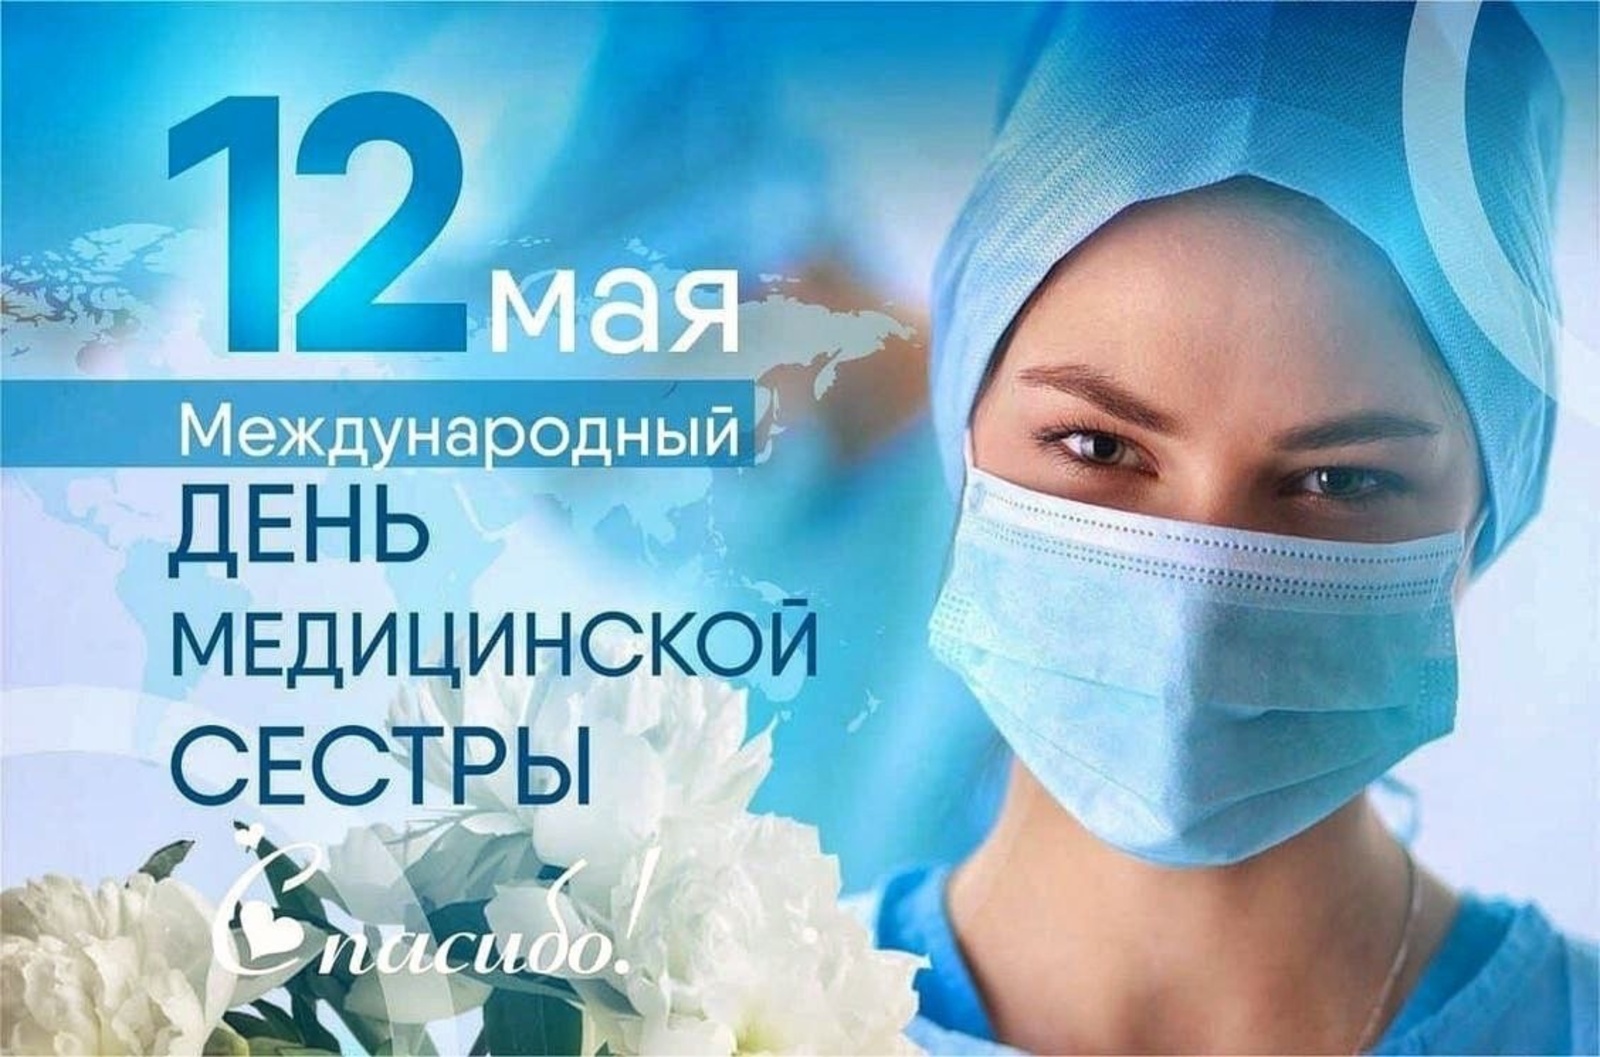 Нов 12 мая. Международный день медицинской сестры. Международный день медсестры. 12 Мая день медицинской сестры. Деньмедицинсктй сестры.